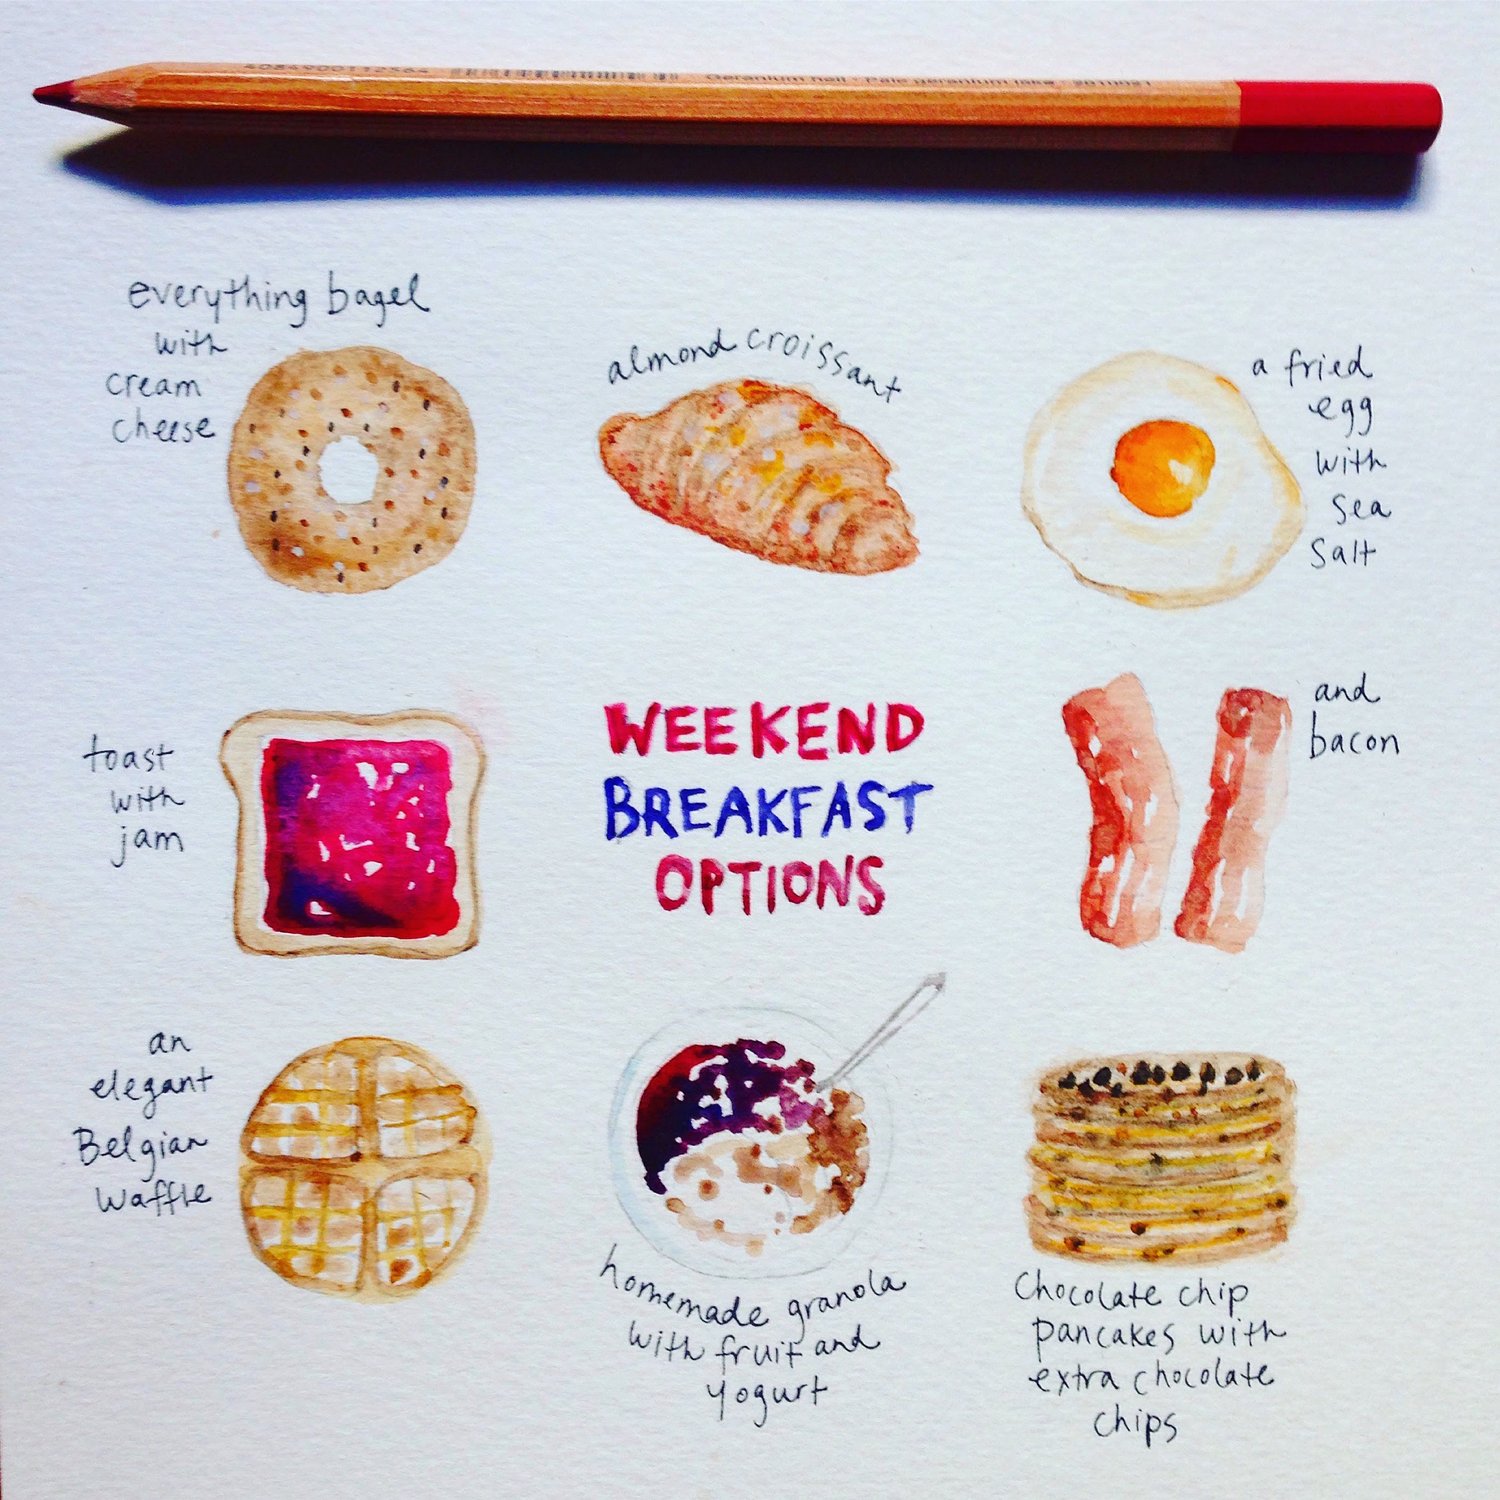 Image of Weekend Breakfast Options